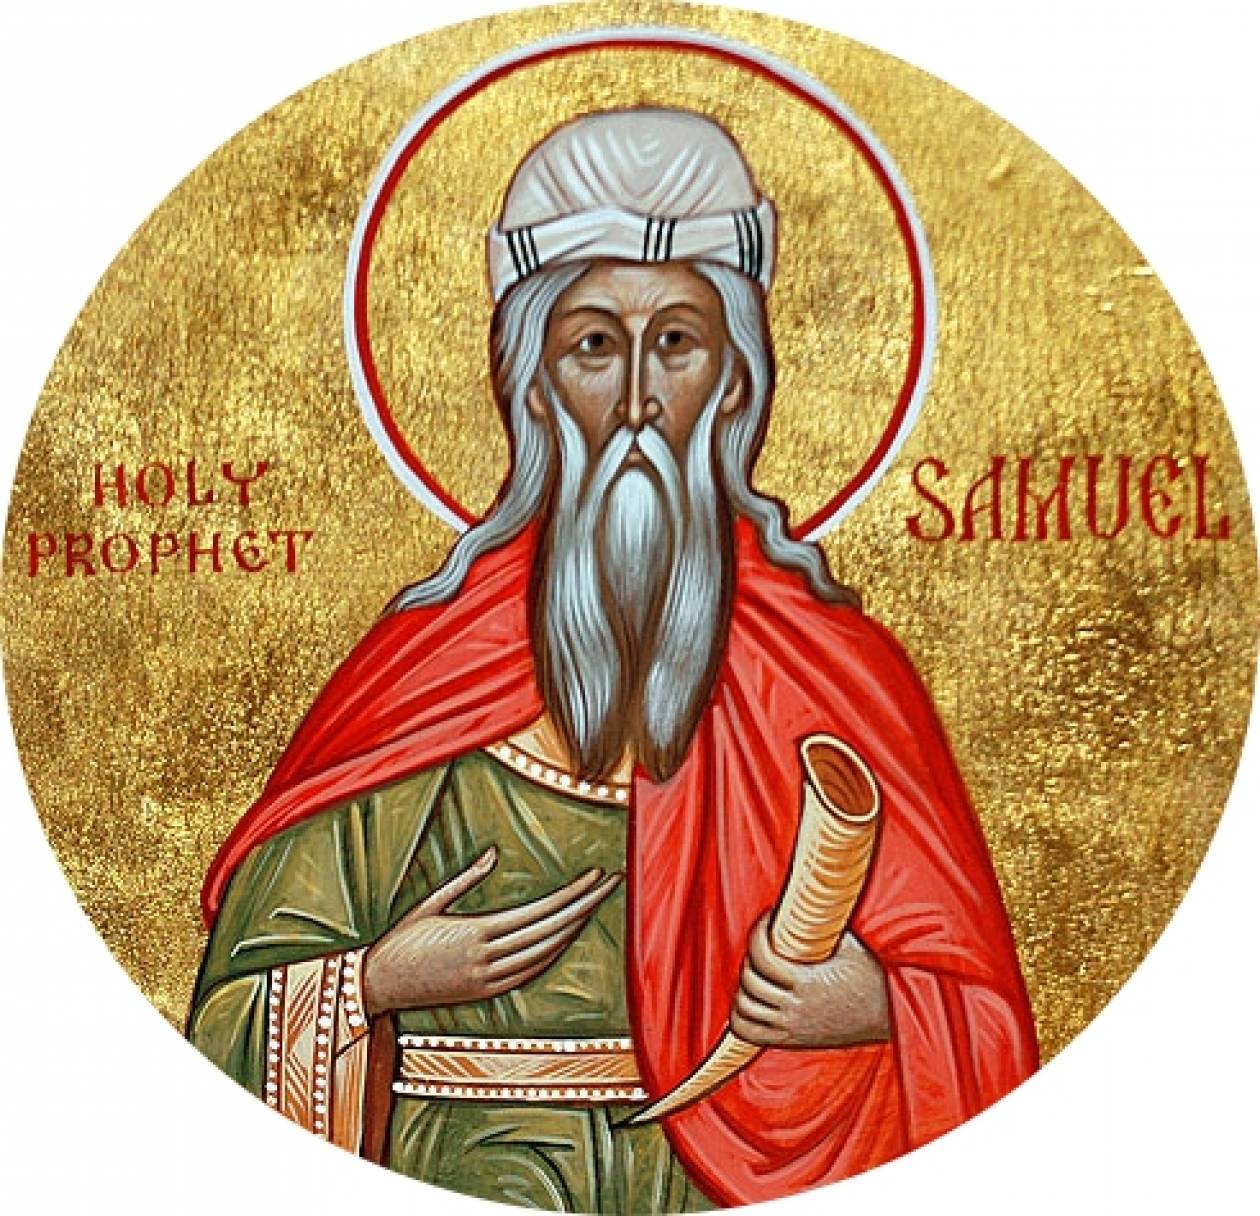 Ο Προφήτης Σαμουήλ εορτάζει στις 20 Αυγούστου